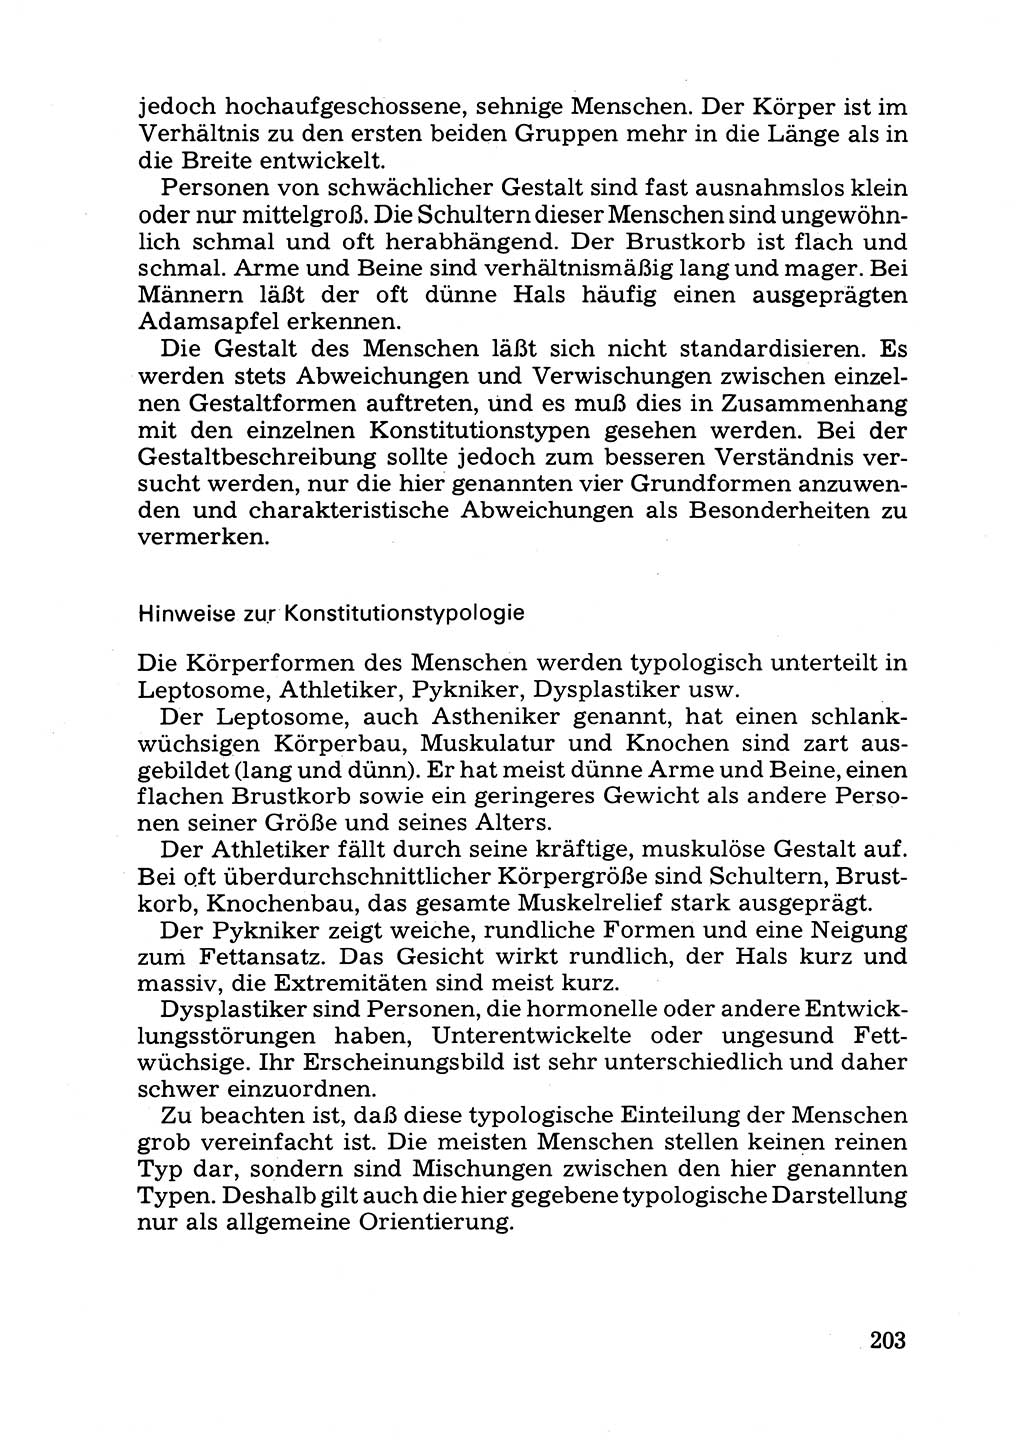 Das subjektive Porträt [Deutsche Demokratische Republik (DDR)] 1981, Seite 203 (Subj. Port. DDR 1981, S. 203)